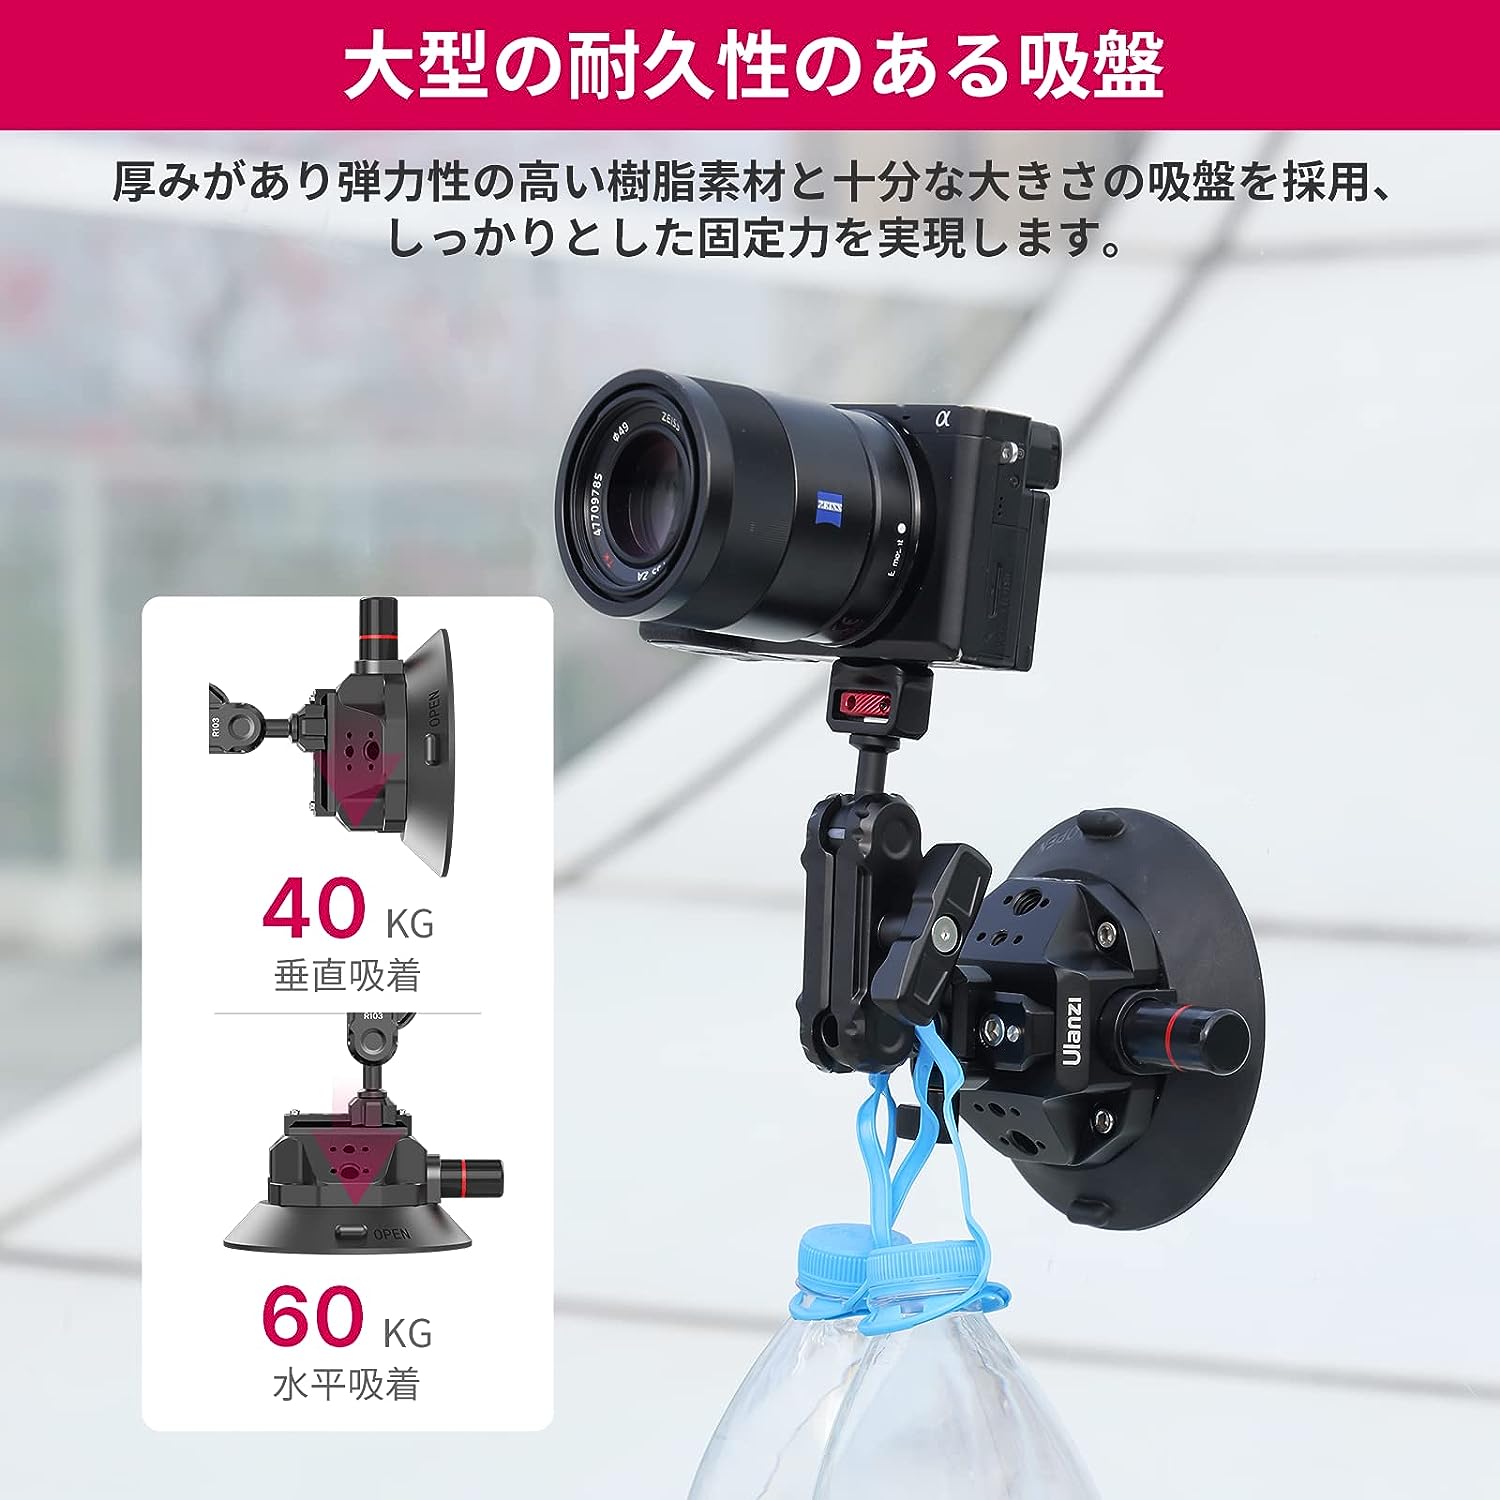 Ulanzi SC-02 カメラ用吸盤マウント 車載マウント GoPro Insta360 DJI カメラ用 360°回転 アルミ合金製 車載ホルダー 4.5インチ 1/4